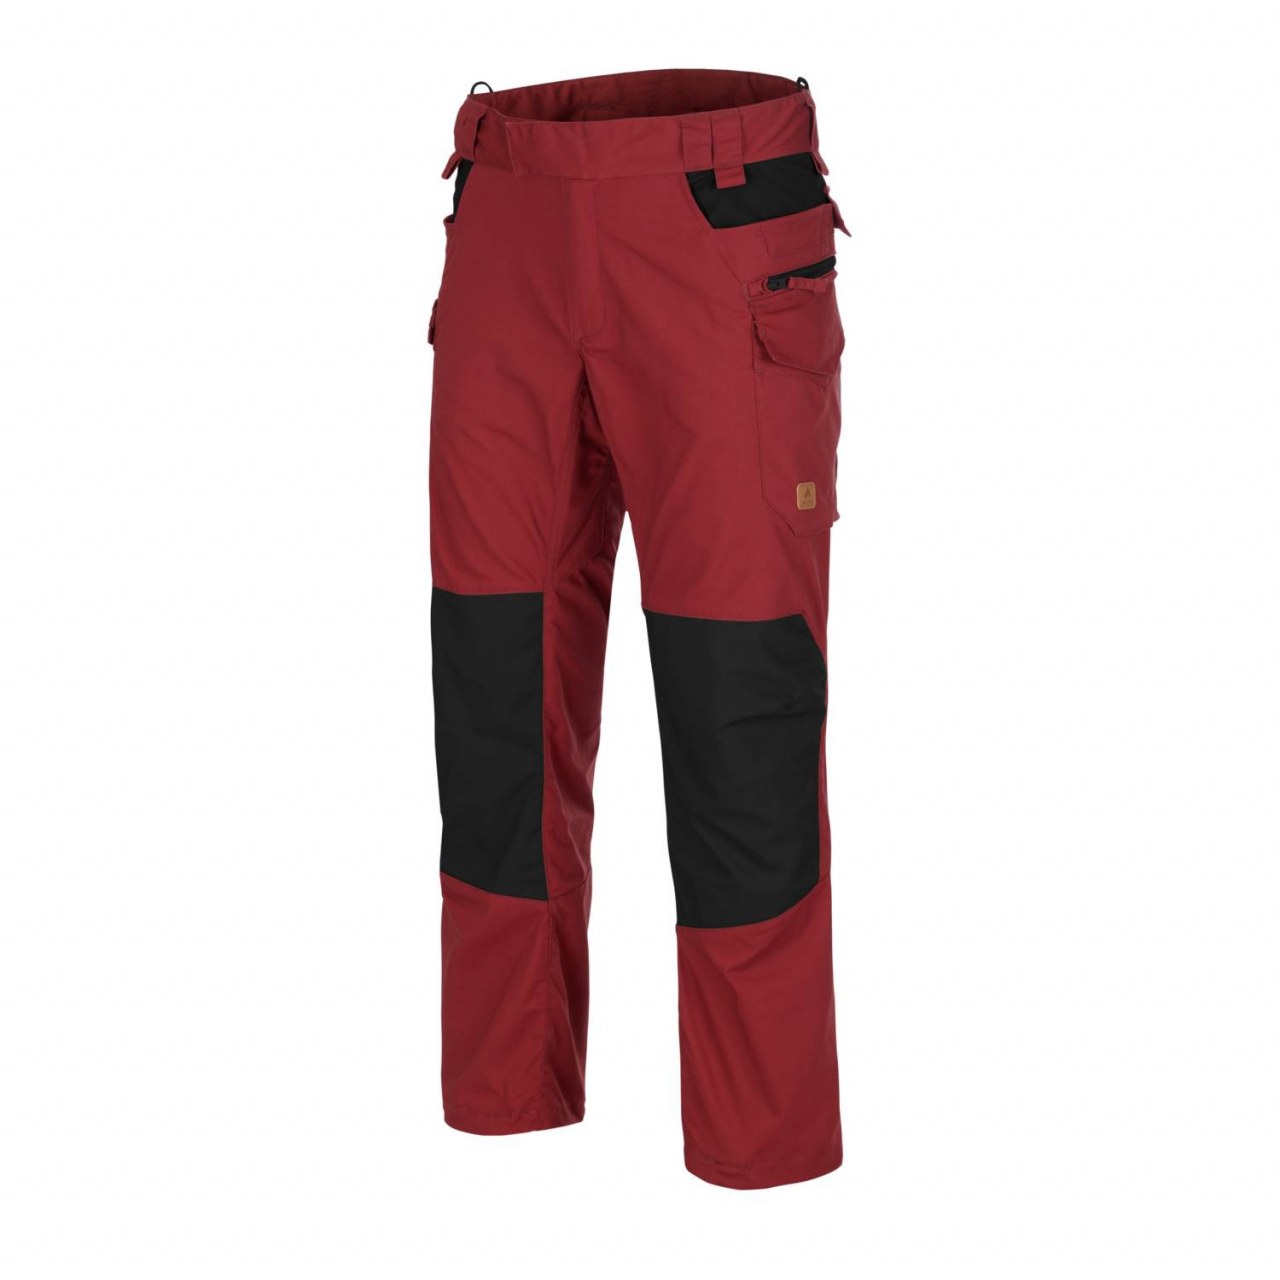 Kalhoty Helikon Pilgrim - červené-černé, S